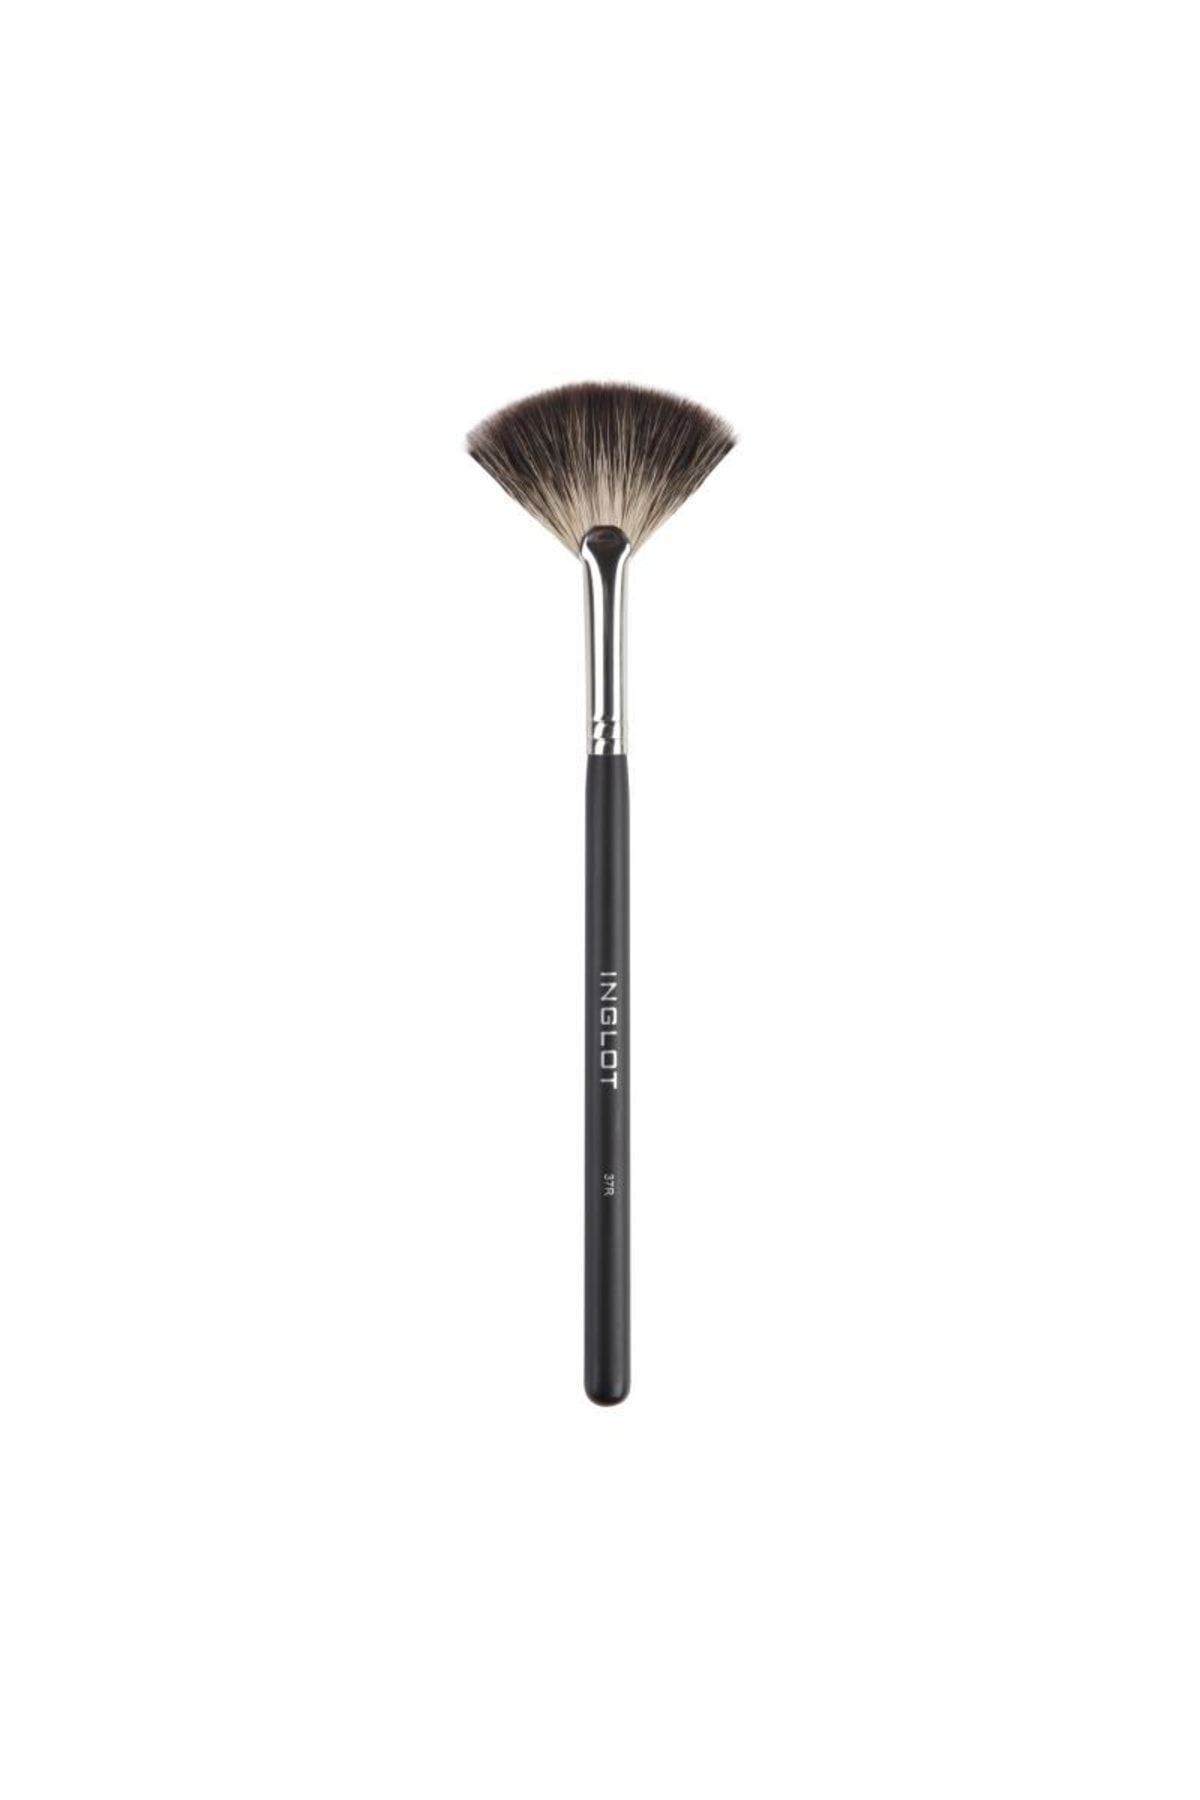 Inglot Makeup Brush 37r